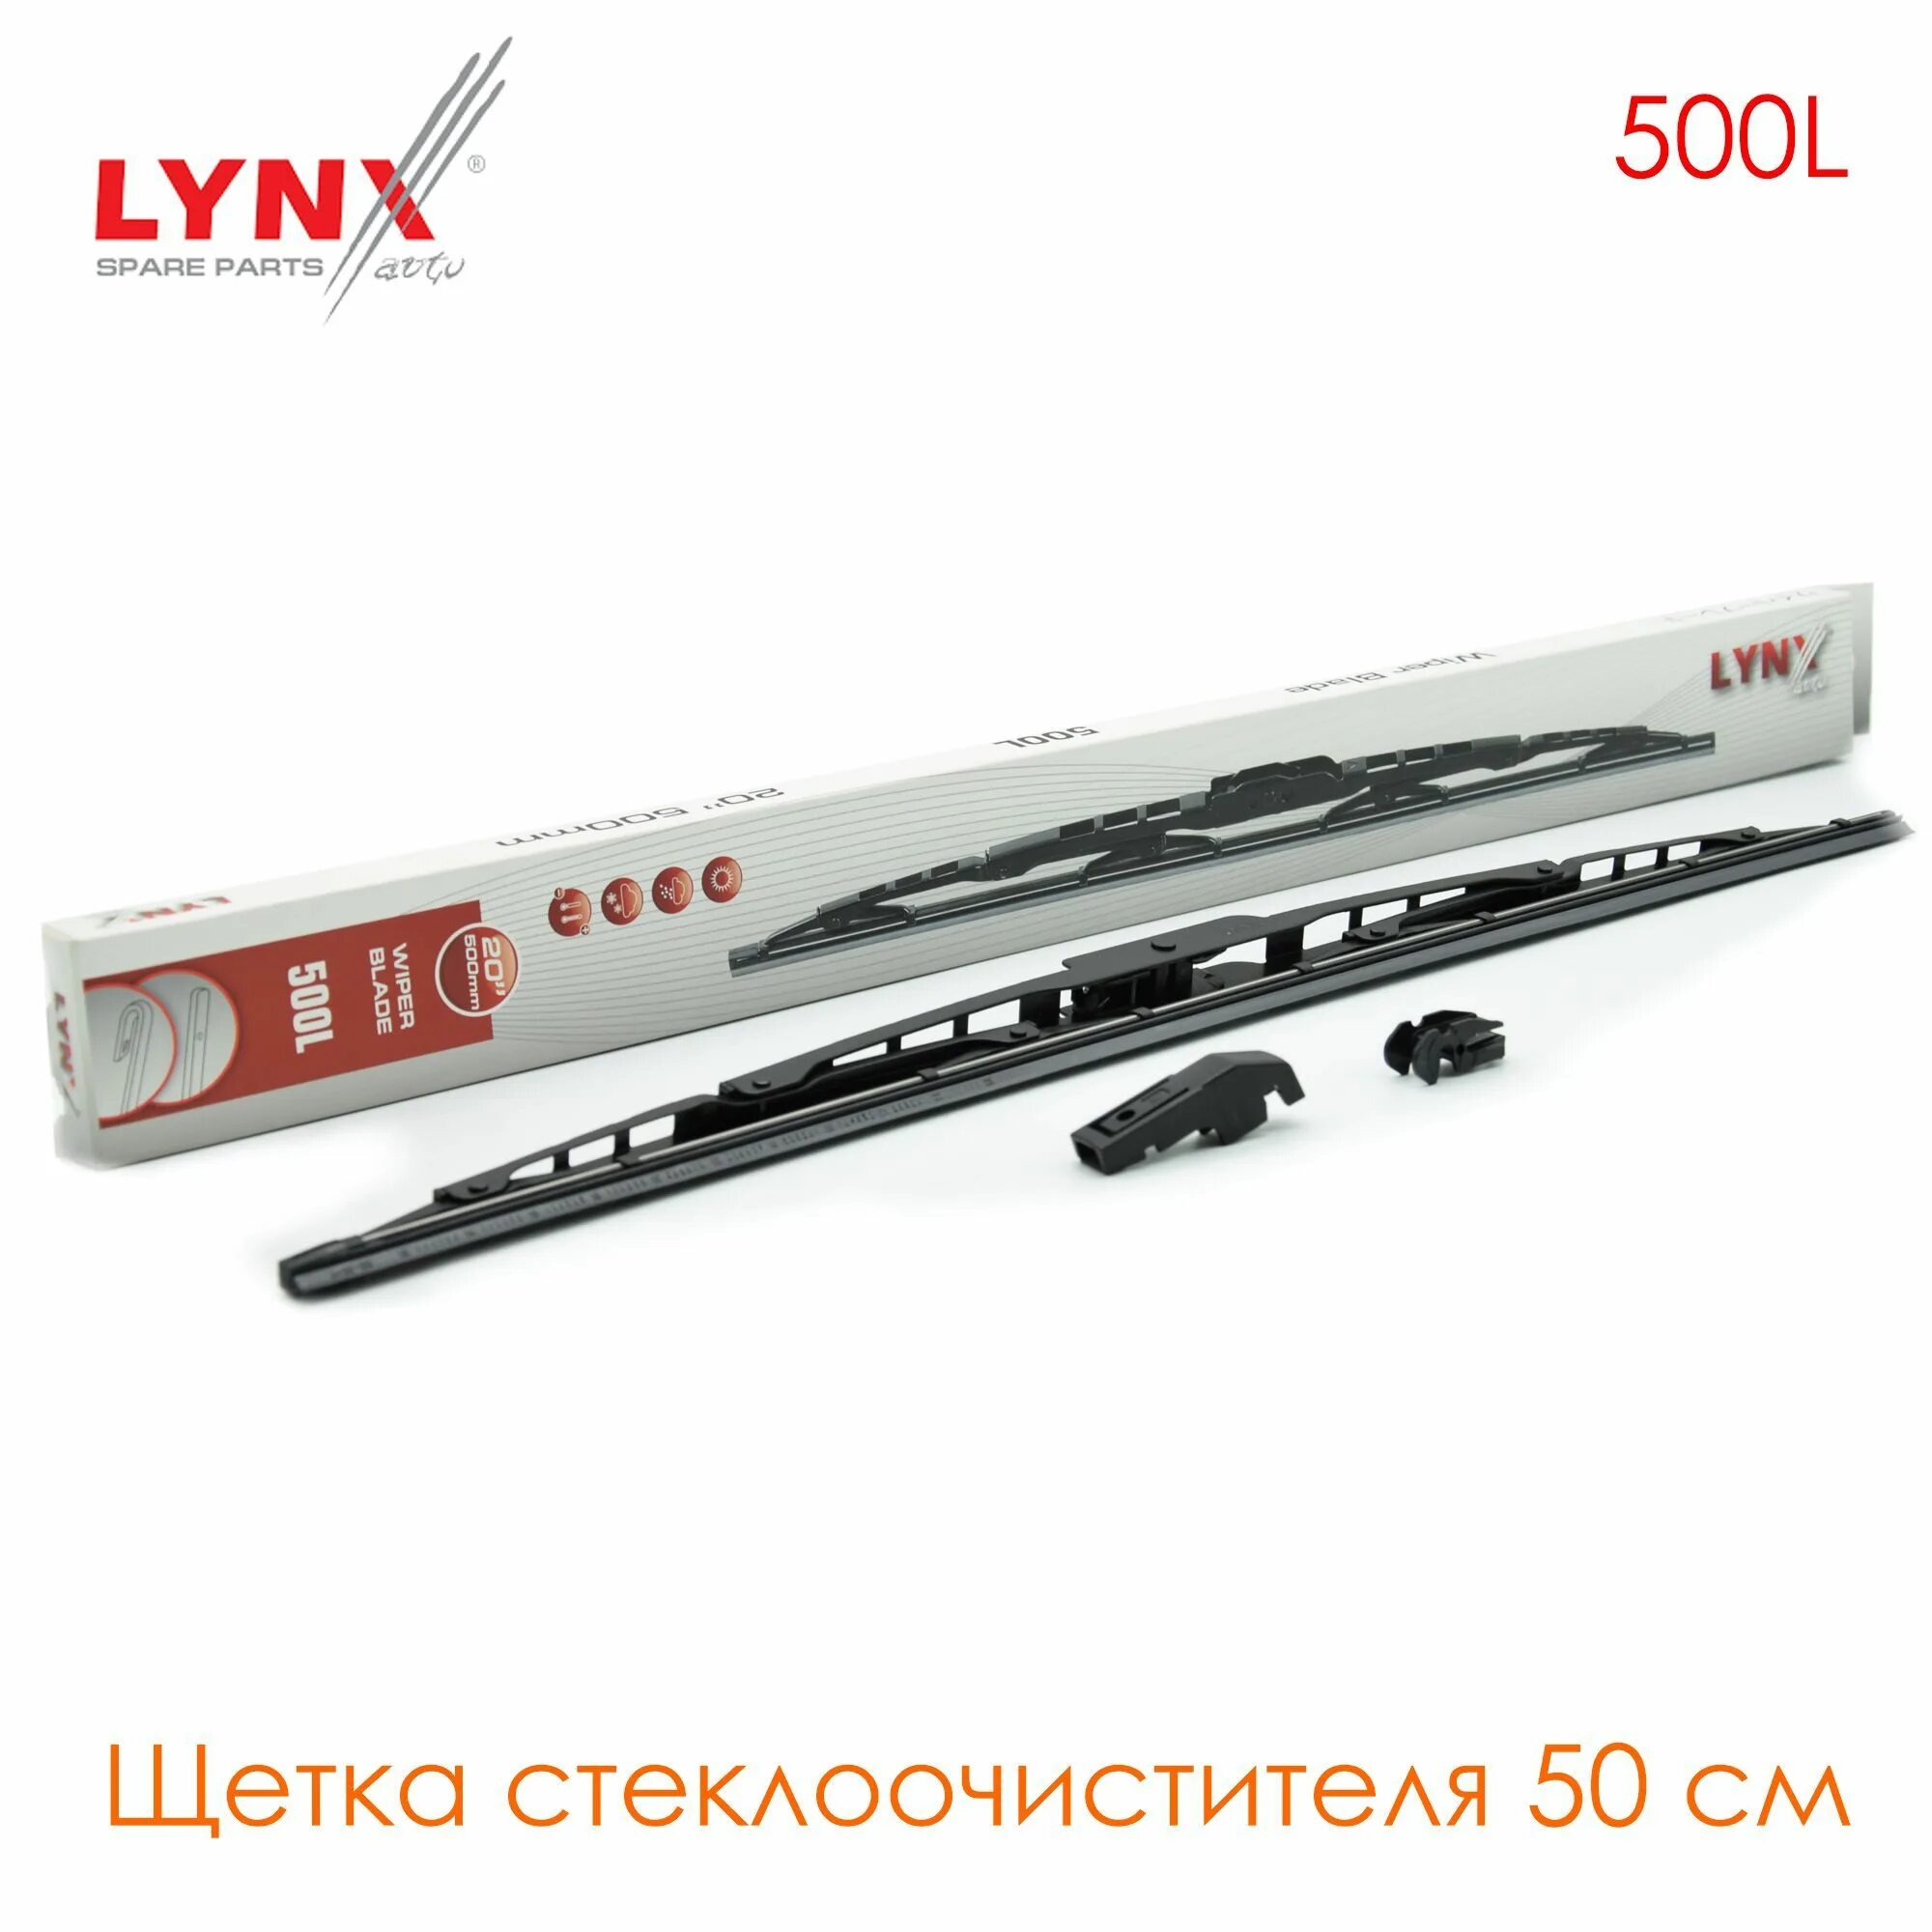 Щетка стеклоочистителя Lynx 500l. К-кт щеток стеклоочистителя Lynx 500мм. Каркасная щетка Lynx. Lynx : 500l. Производитель lynx отзывы